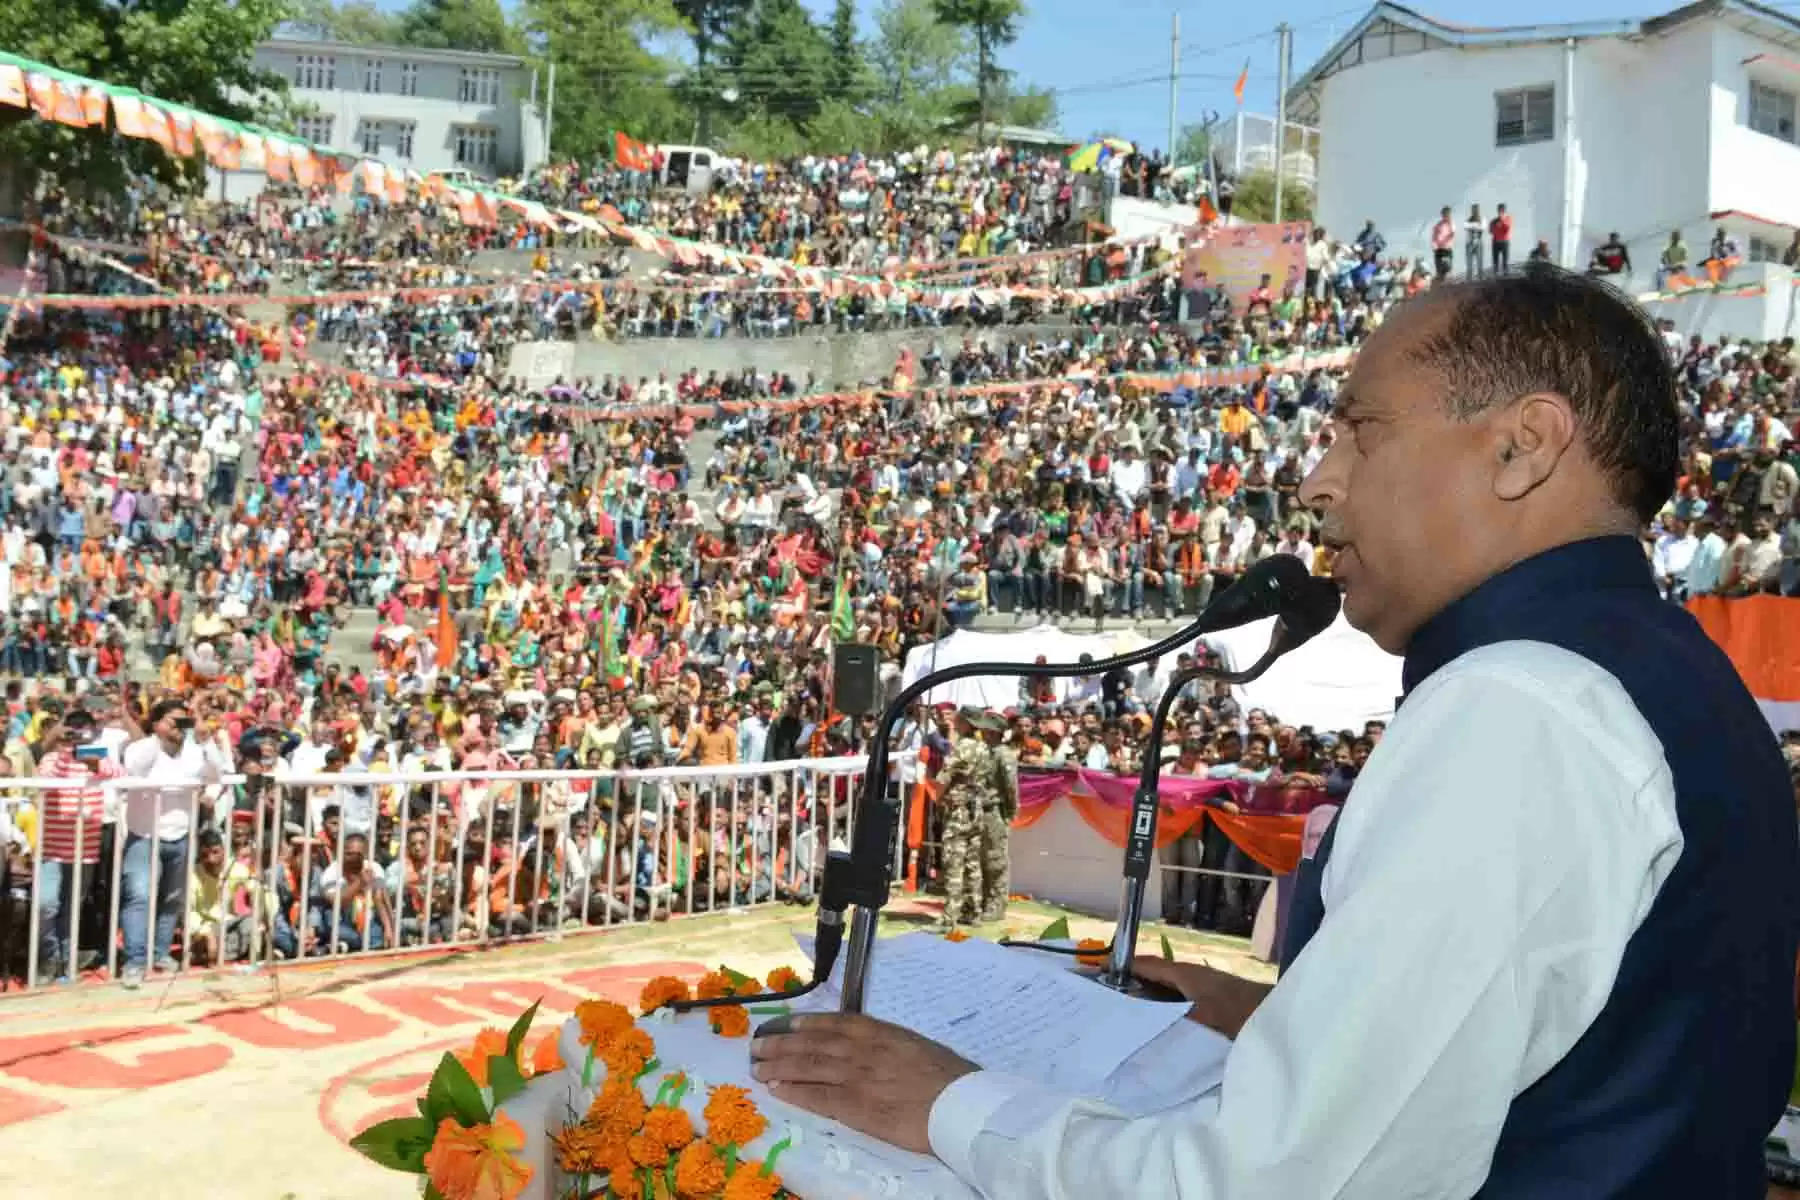 CM Jairam Thakur Chamba हिमाचल प्रदेश के मुख्यमंत्री जयराम ठाकुर ने कहा कि चुराह क्षेत्र को विकास की दृष्टि से संवारना हमारी प्रतिबद्धता है। मुख्यमंत्री जयराम ठाकुर रविवार को चुराह विधानसभा क्षेत्र ((CM Jairam Thakur visit to Churah) ) के दौरे पर थे। इस दौरान उन्होंने चुराह विधानसभा क्षेत्र में 146 करोड़ रुपये की लागत की विभिन्न विकास योजनाओं के लोकार्पण व शिलान्यास किए। उन्होंने कहा कि इन योजनाओं से चुराह क्षेत्र के विकास को बल और जनता को काफी राहत मिलेगी। 